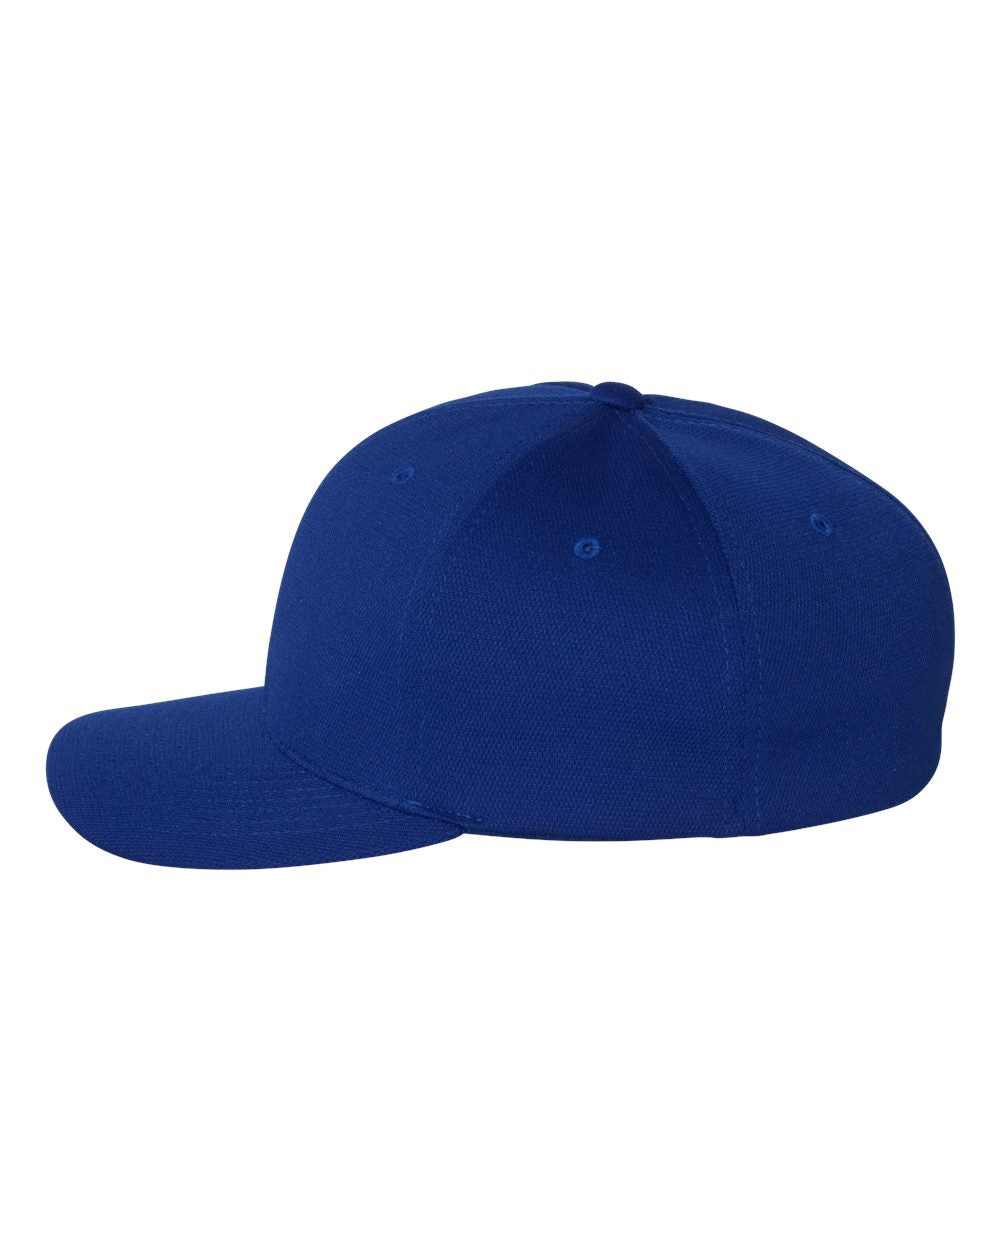 Flexfit Cool & Dry Sport Cap 6597 #color_Royal Blue